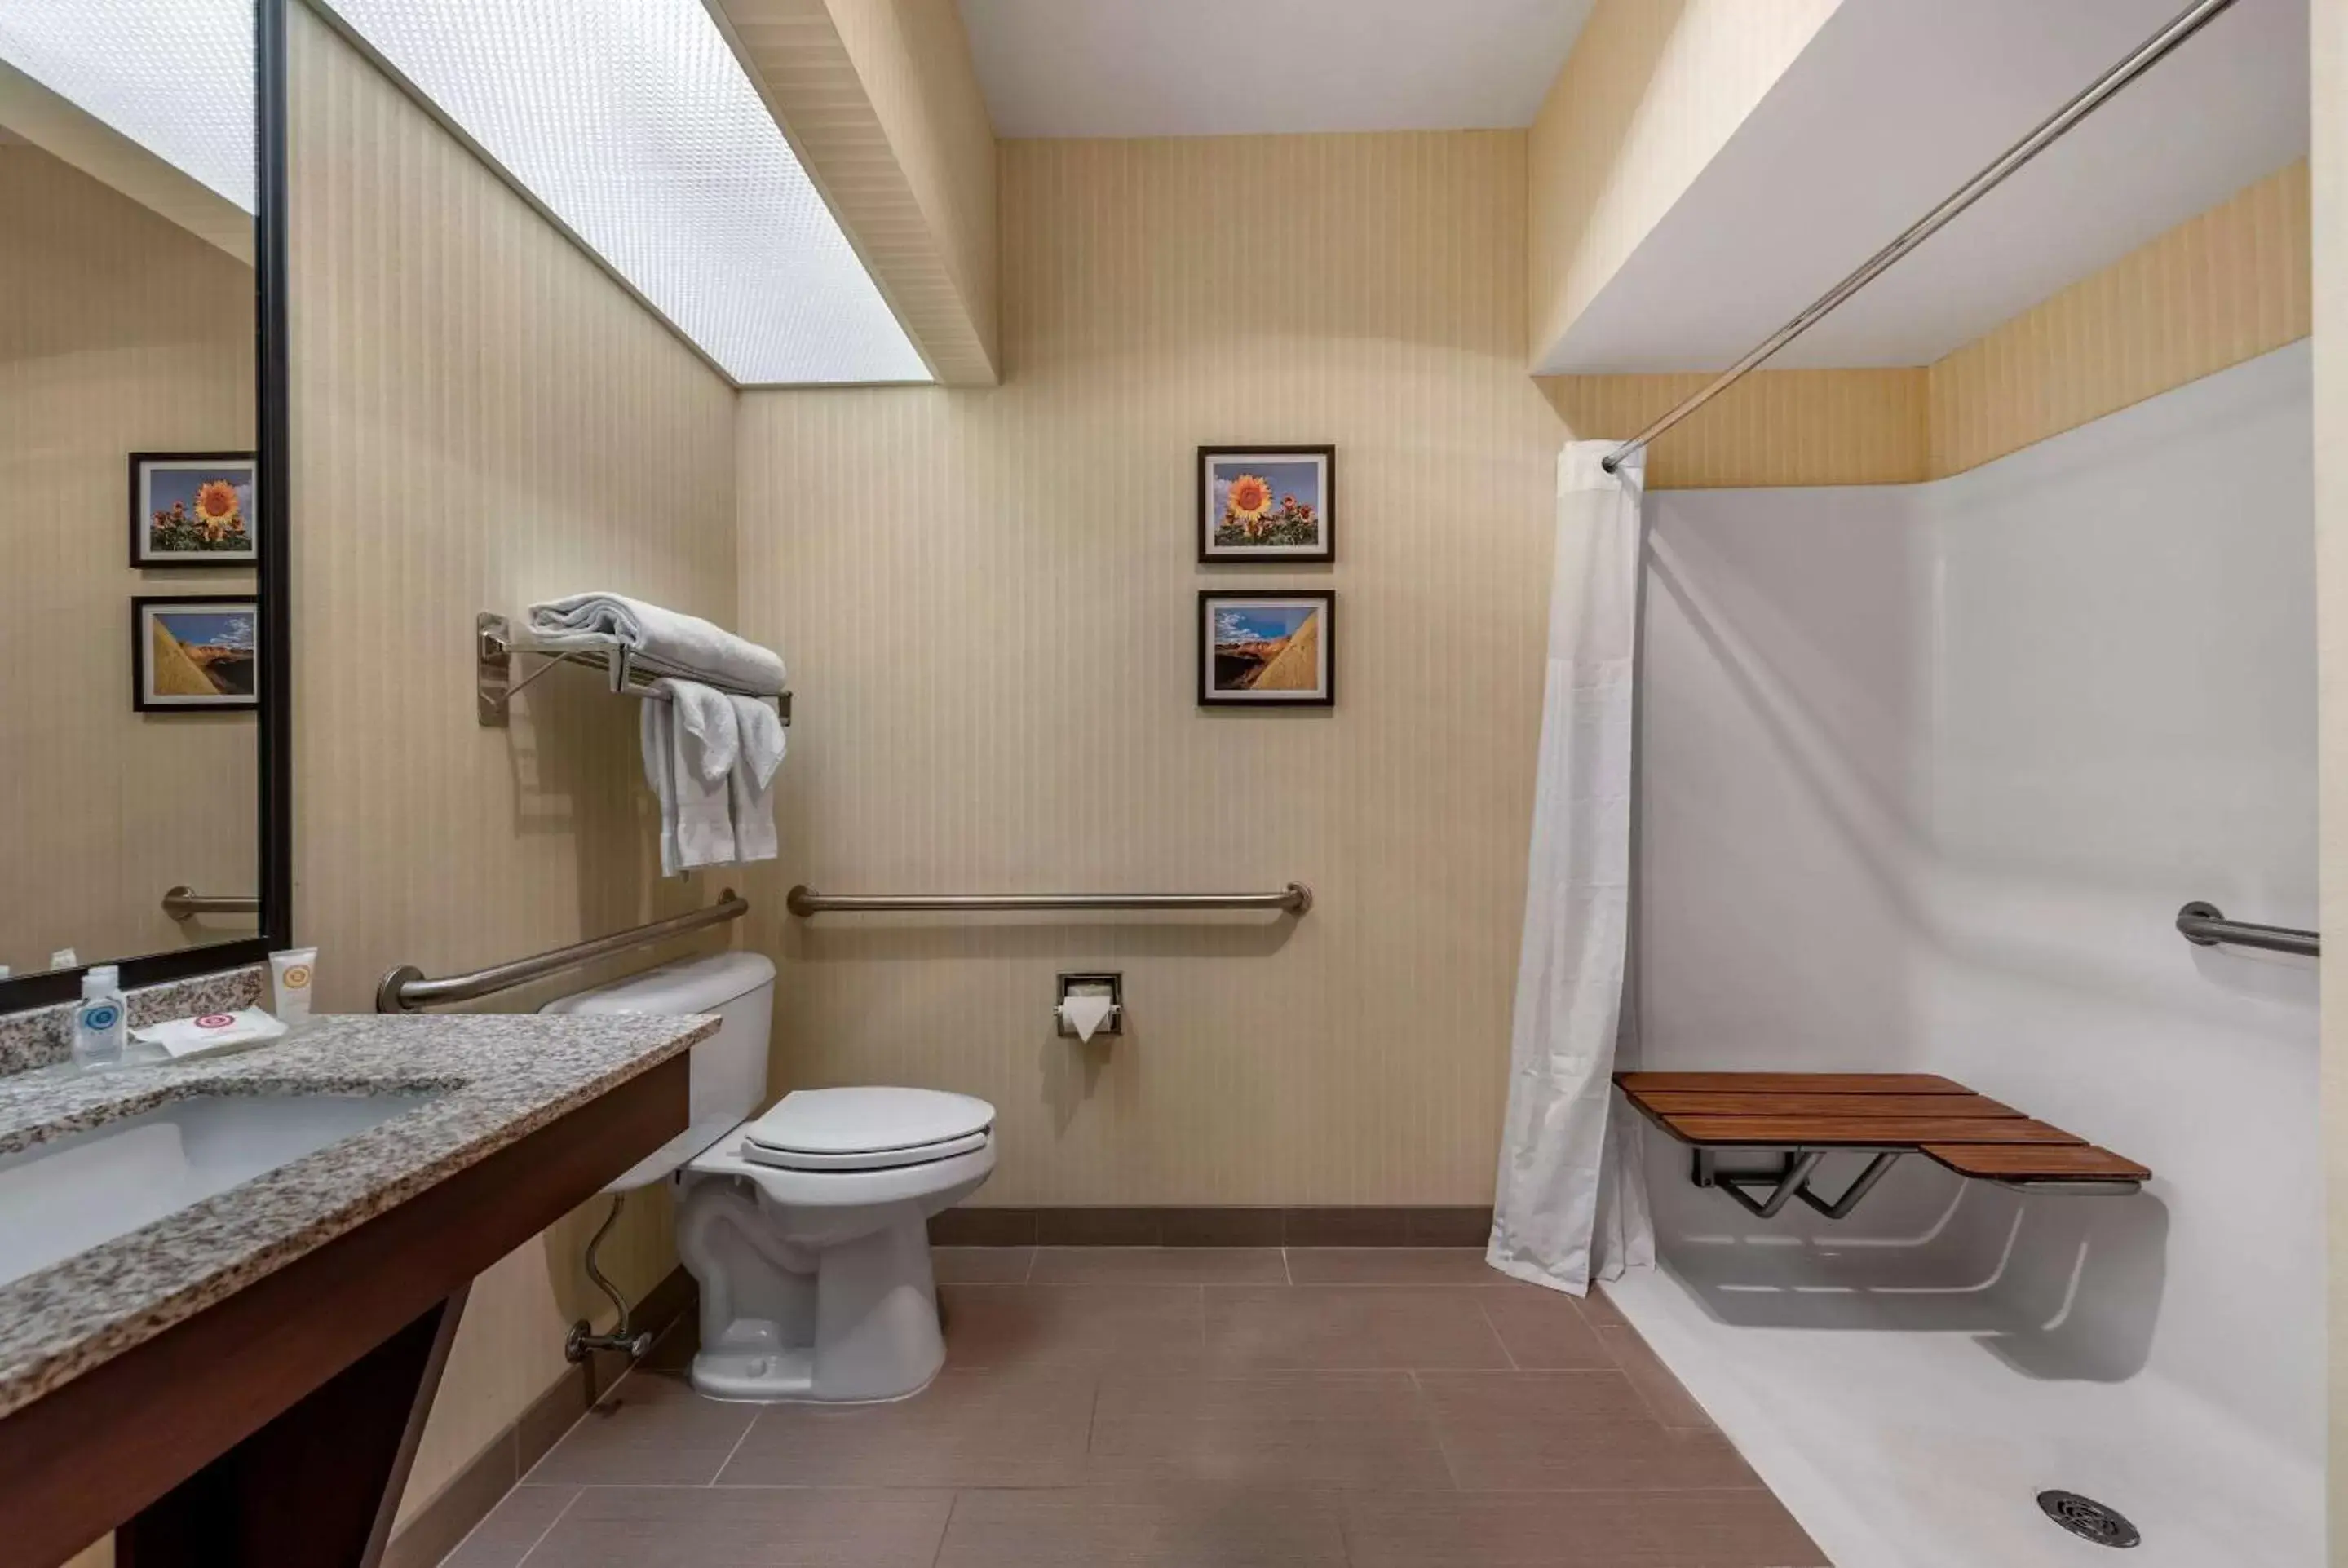 Bathroom in Comfort Inn & Suites Warsaw near US-30